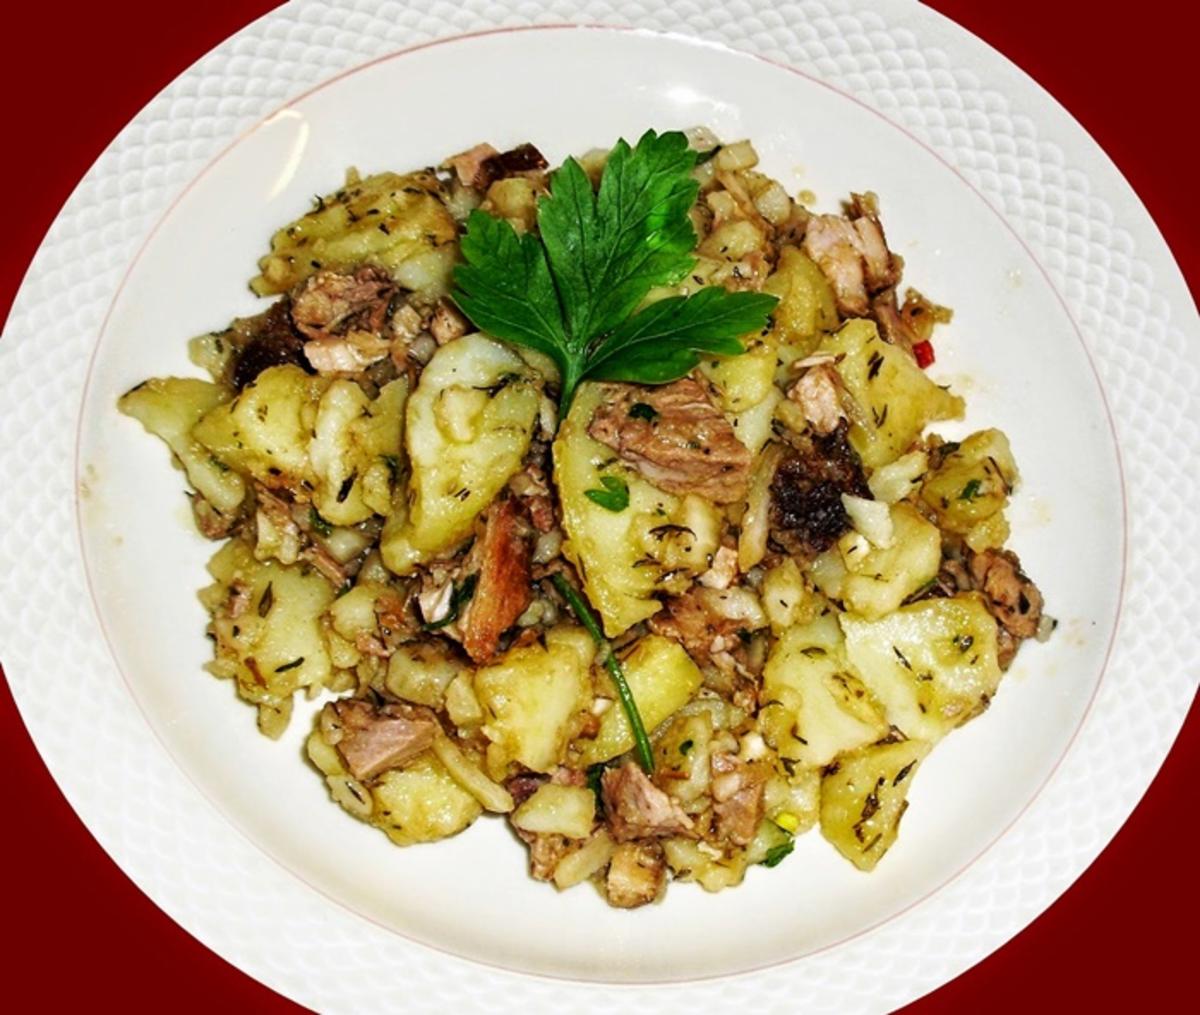 Fleisch-Kartoffelsalat mediterran - (Resteverwertung) - Rezept - Bild Nr. 13705